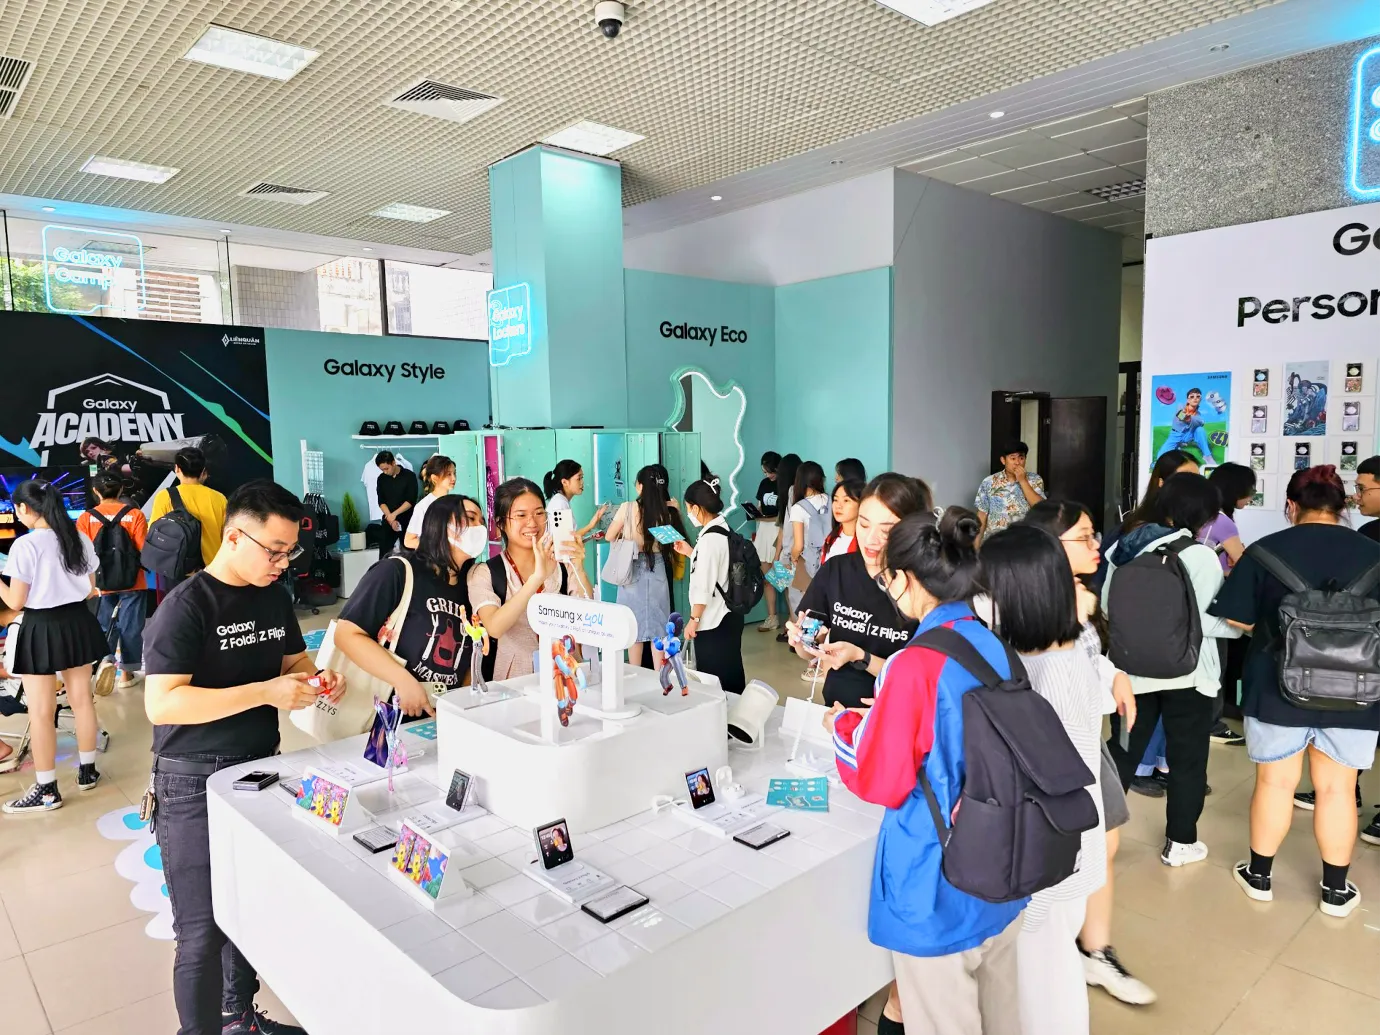 Samsung khởi động Galaxy Campus – Sân chơi công nghệ cho sinh viên các trường Đại học